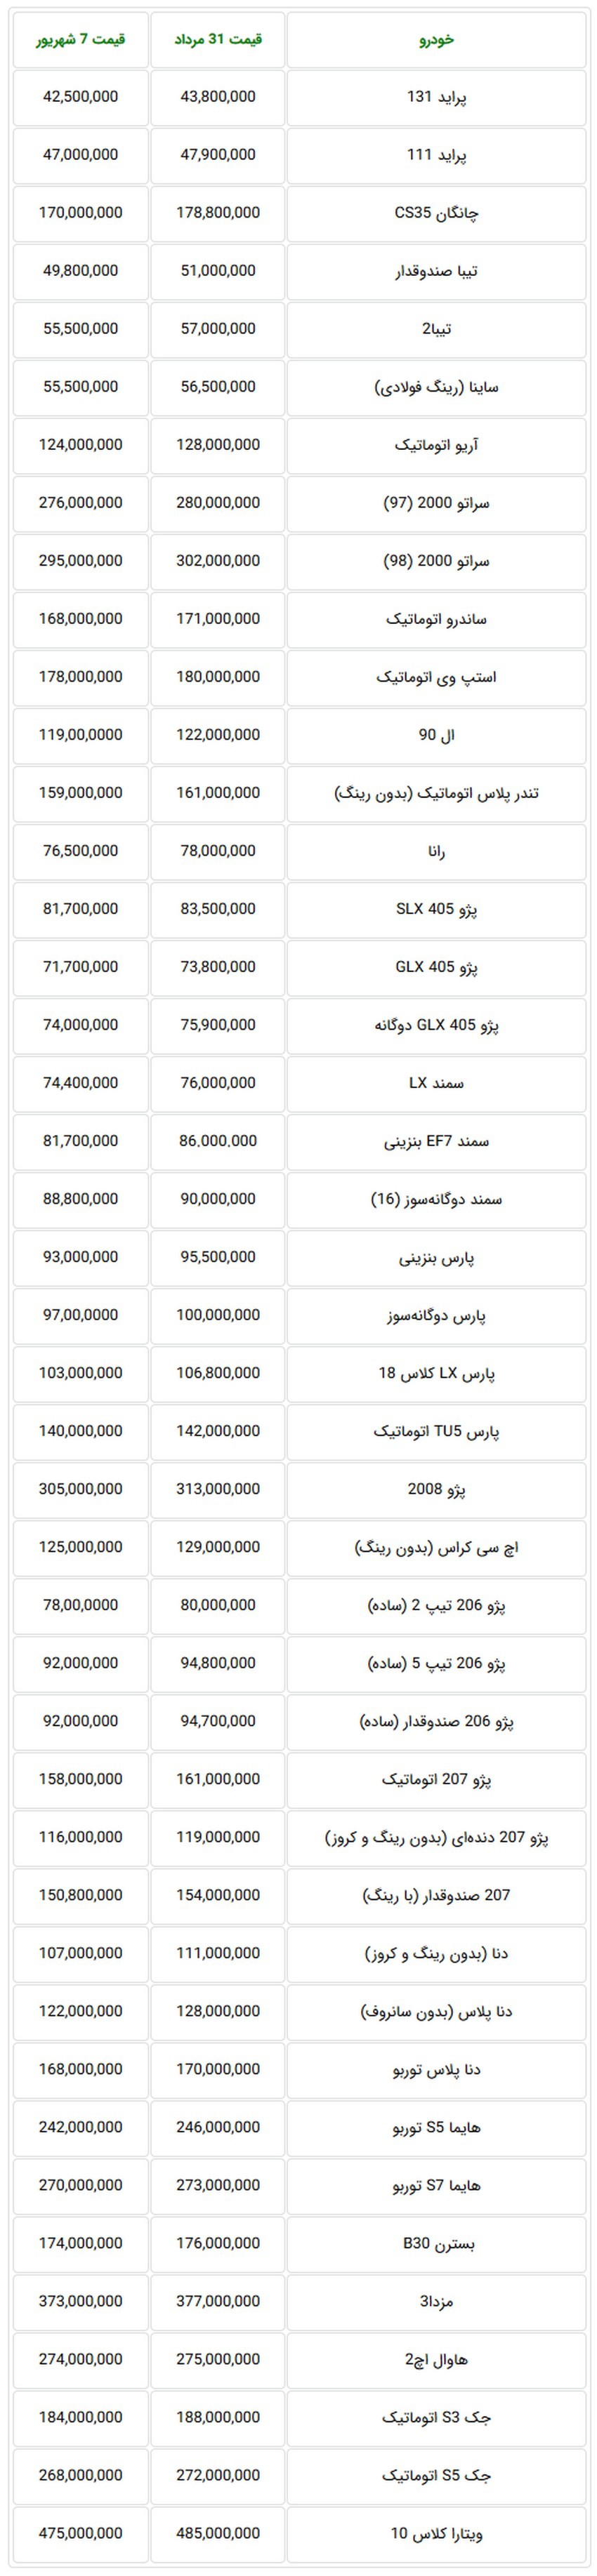 قیمت خودروهای داخلی در بازار تهران.jpg